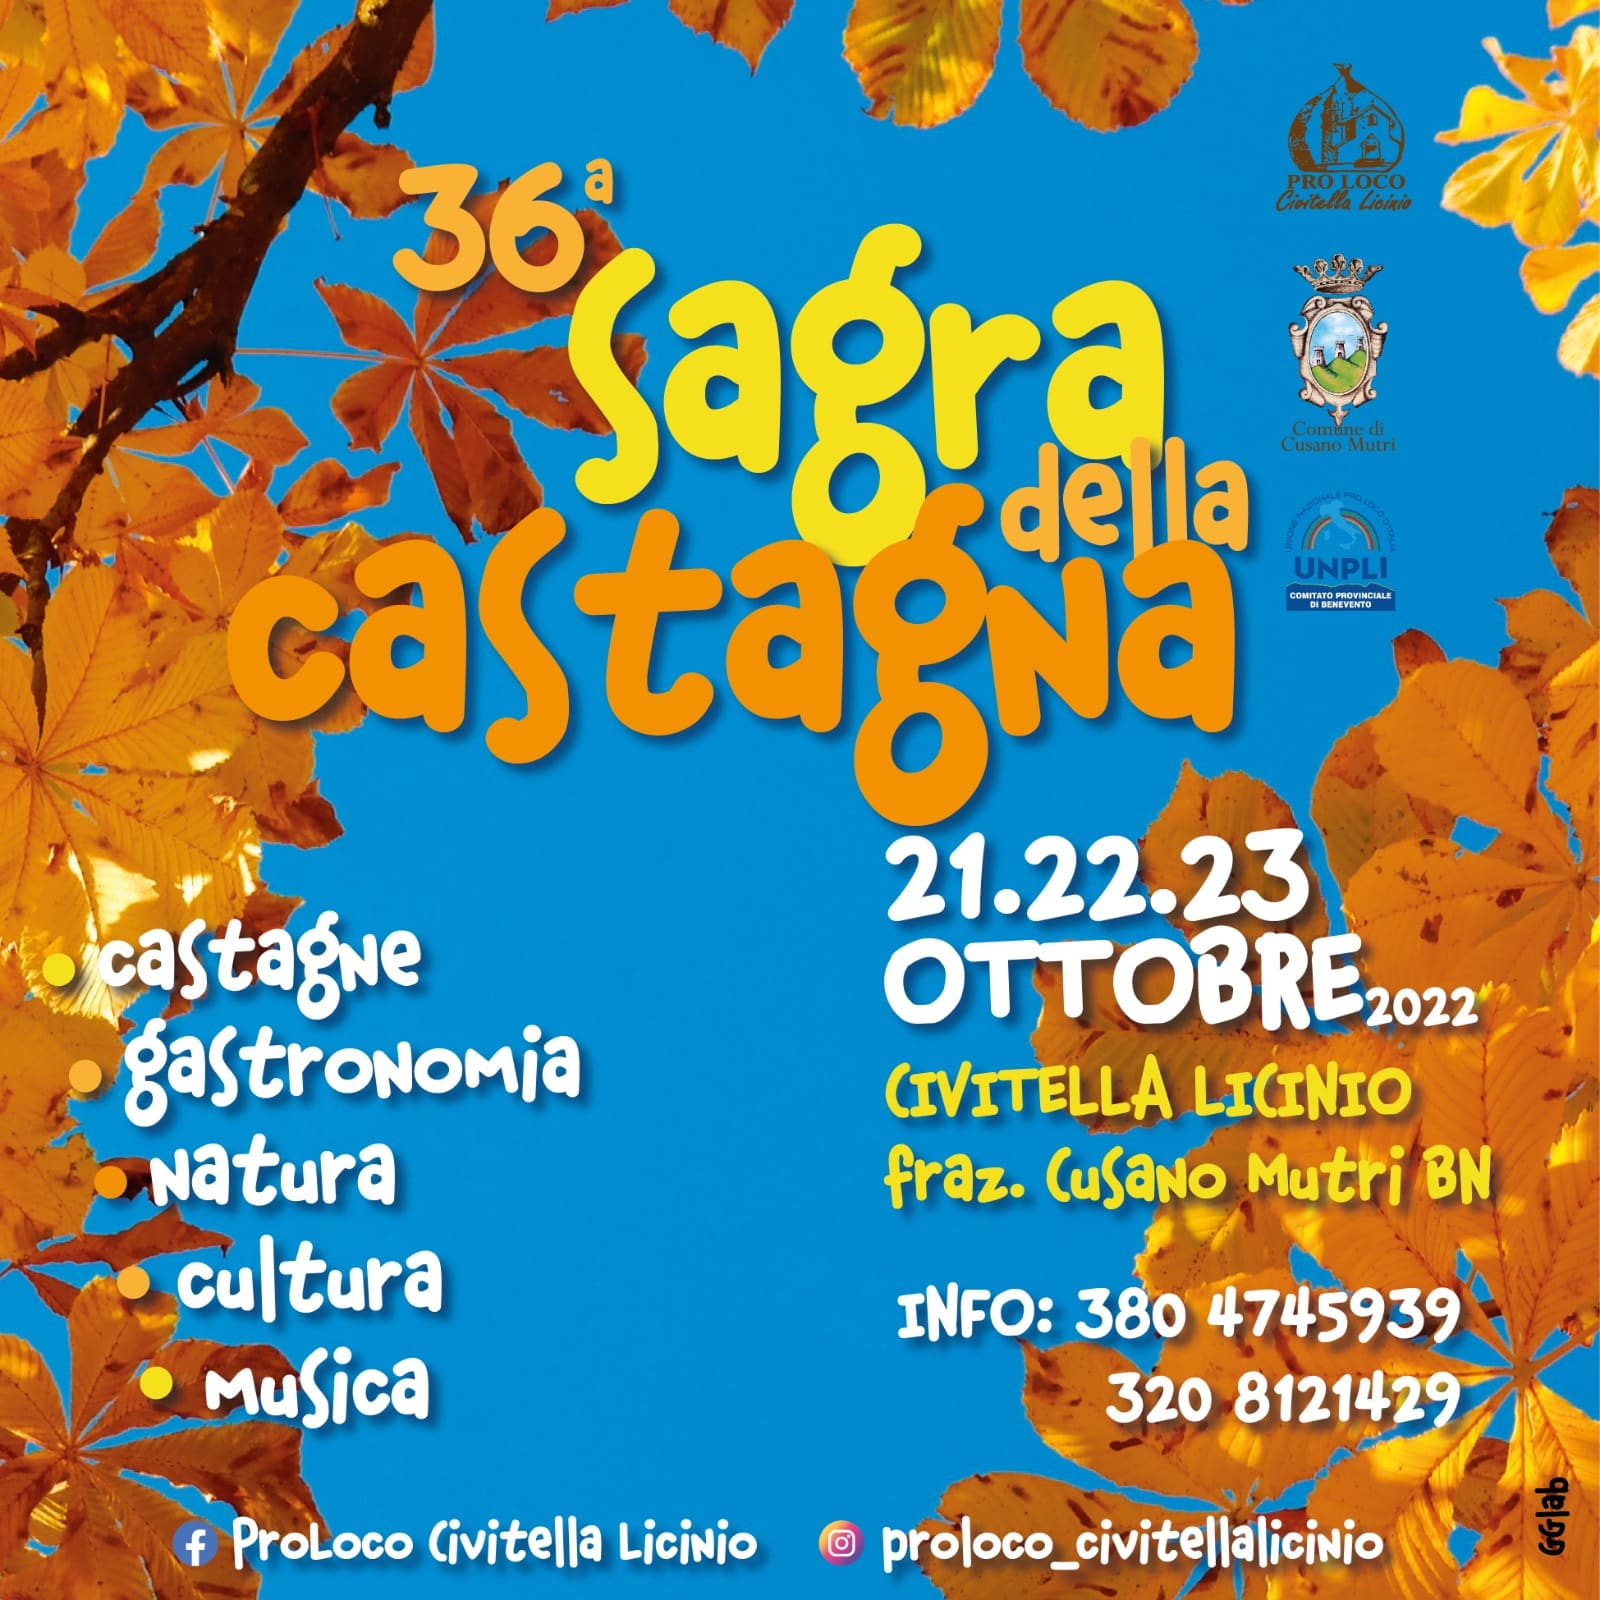 Civitella Licino, dal 21 al 23 ottobre torna la 36° edizione della “Sagra della Castagna”